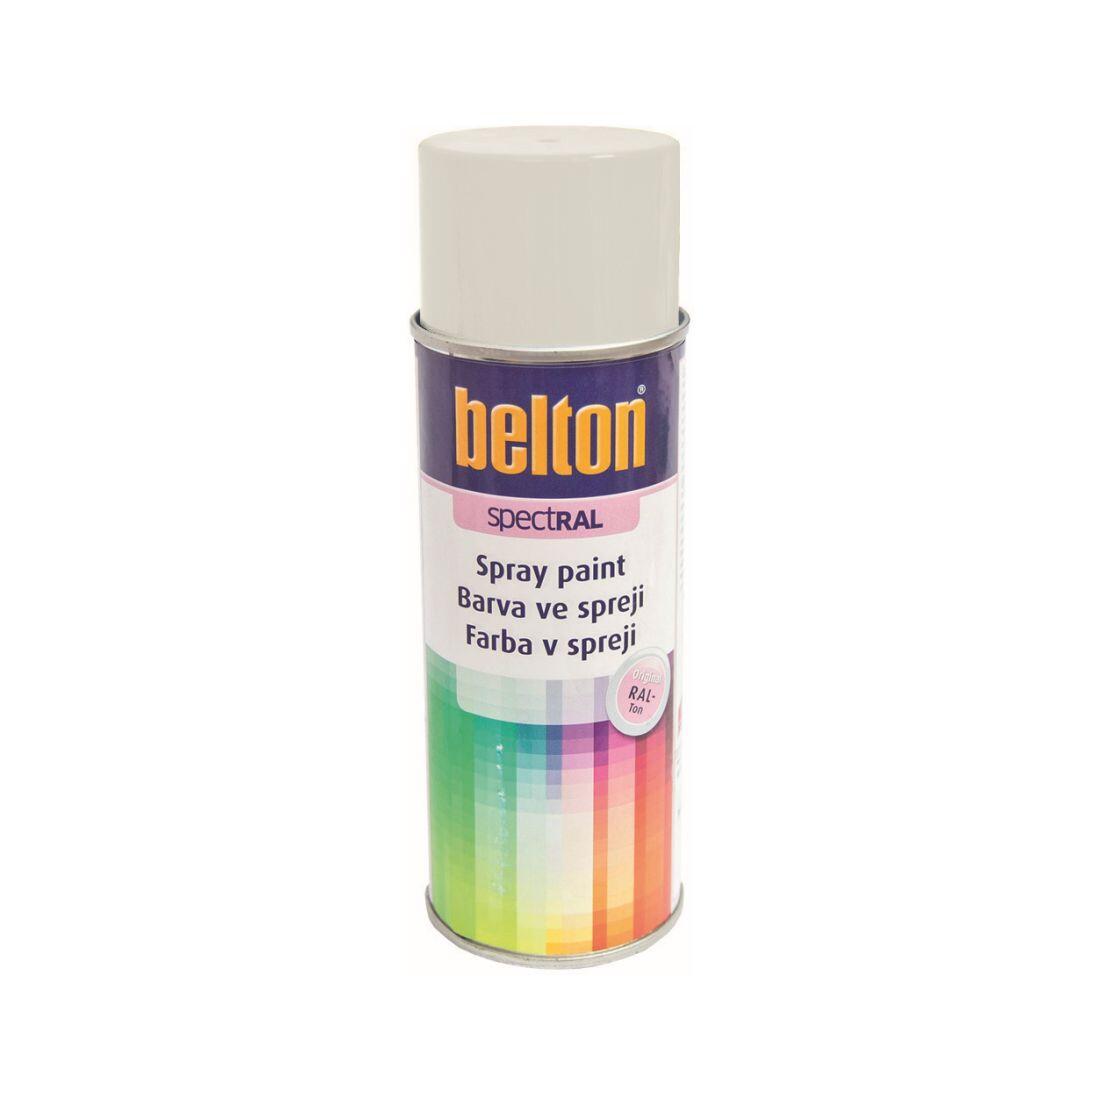 barva ve spreji BELTON RAL 9003, 400ml BÍ signální 0.31 Kg MAXMIX Sklad14 825571 7